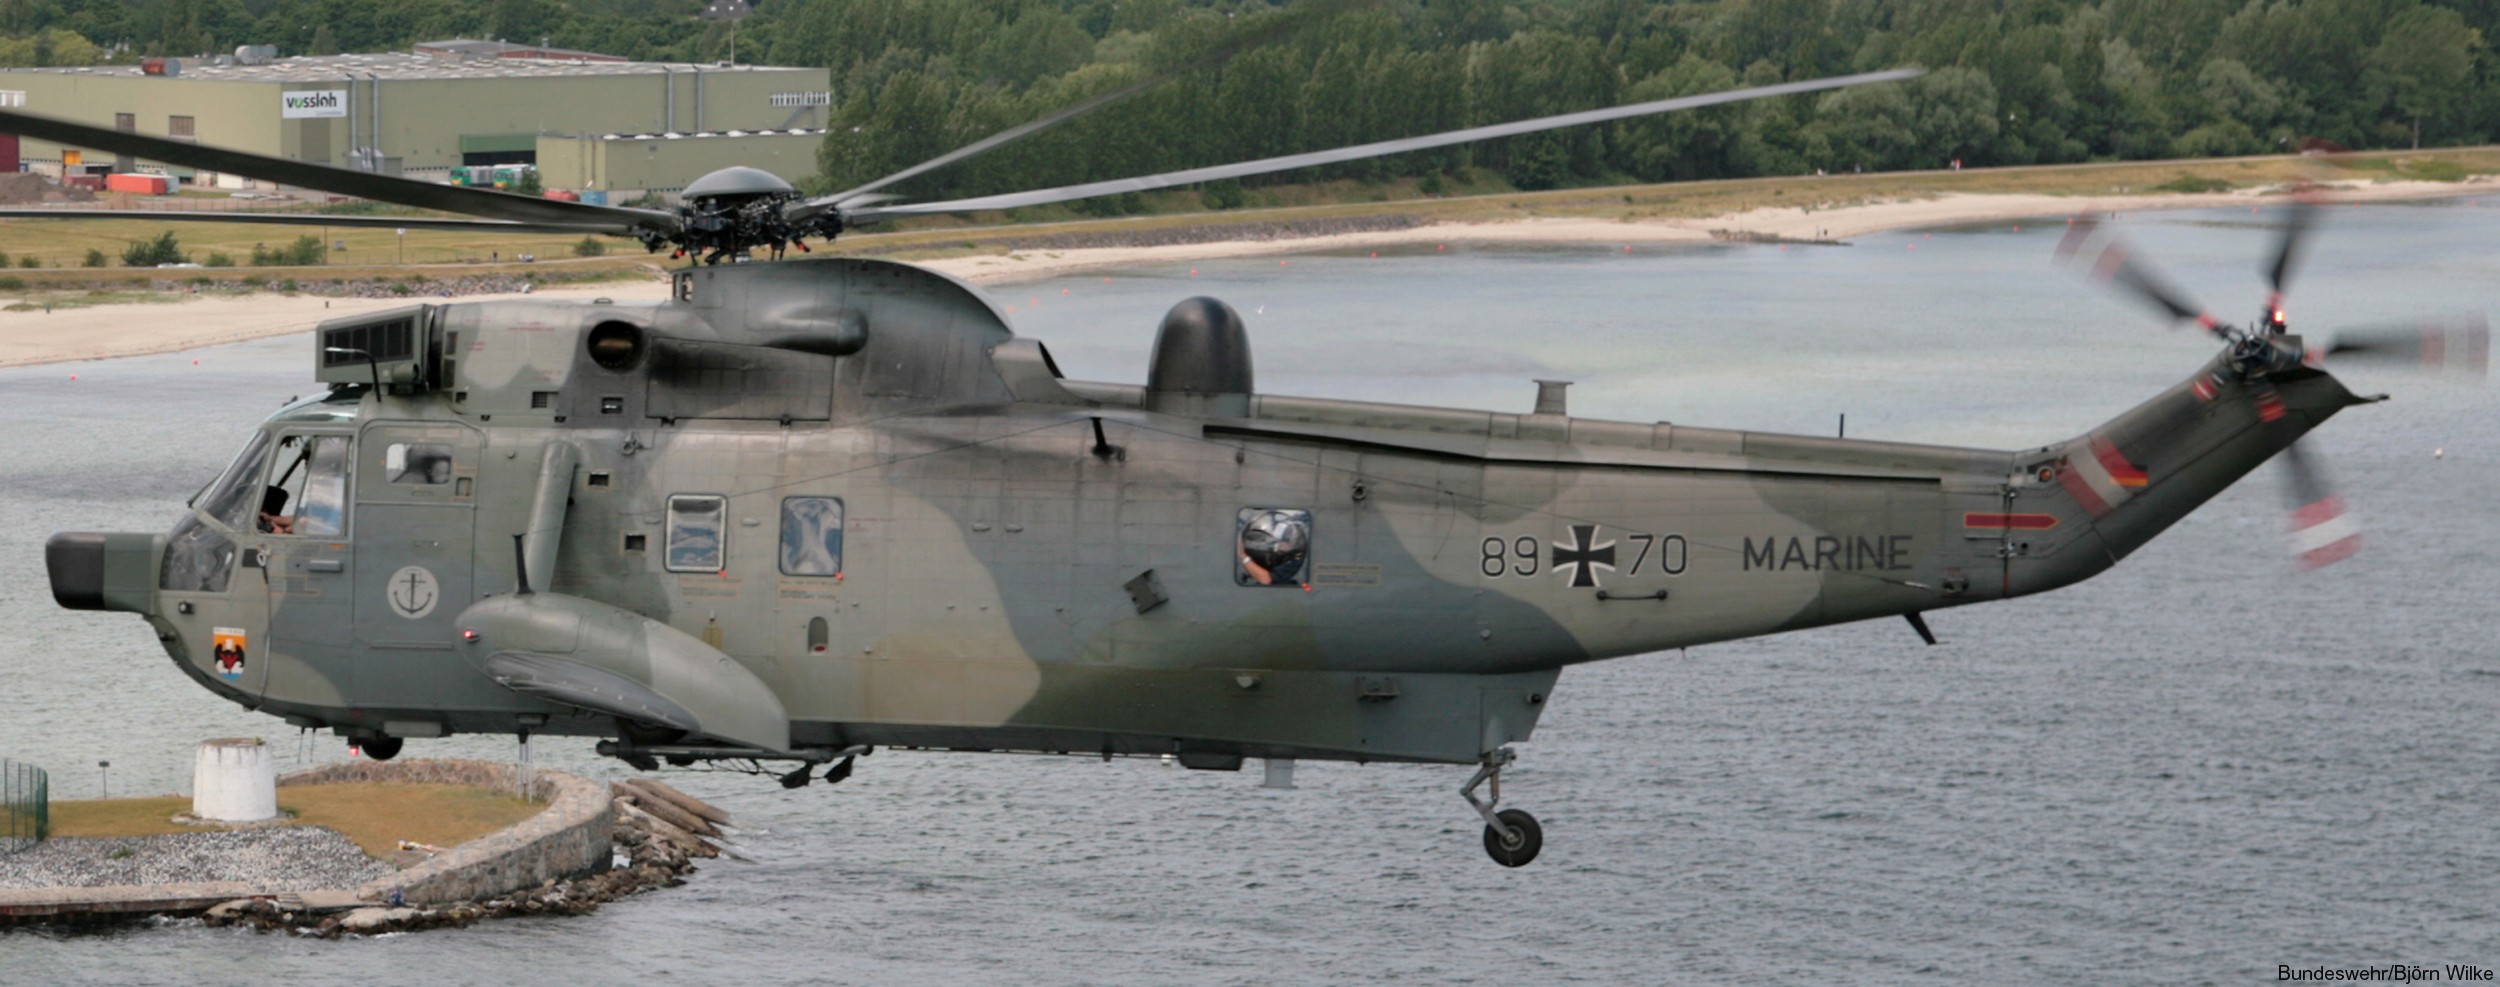 sea king mk.41 westland naval helicopter german navy deutsche marine sar 30